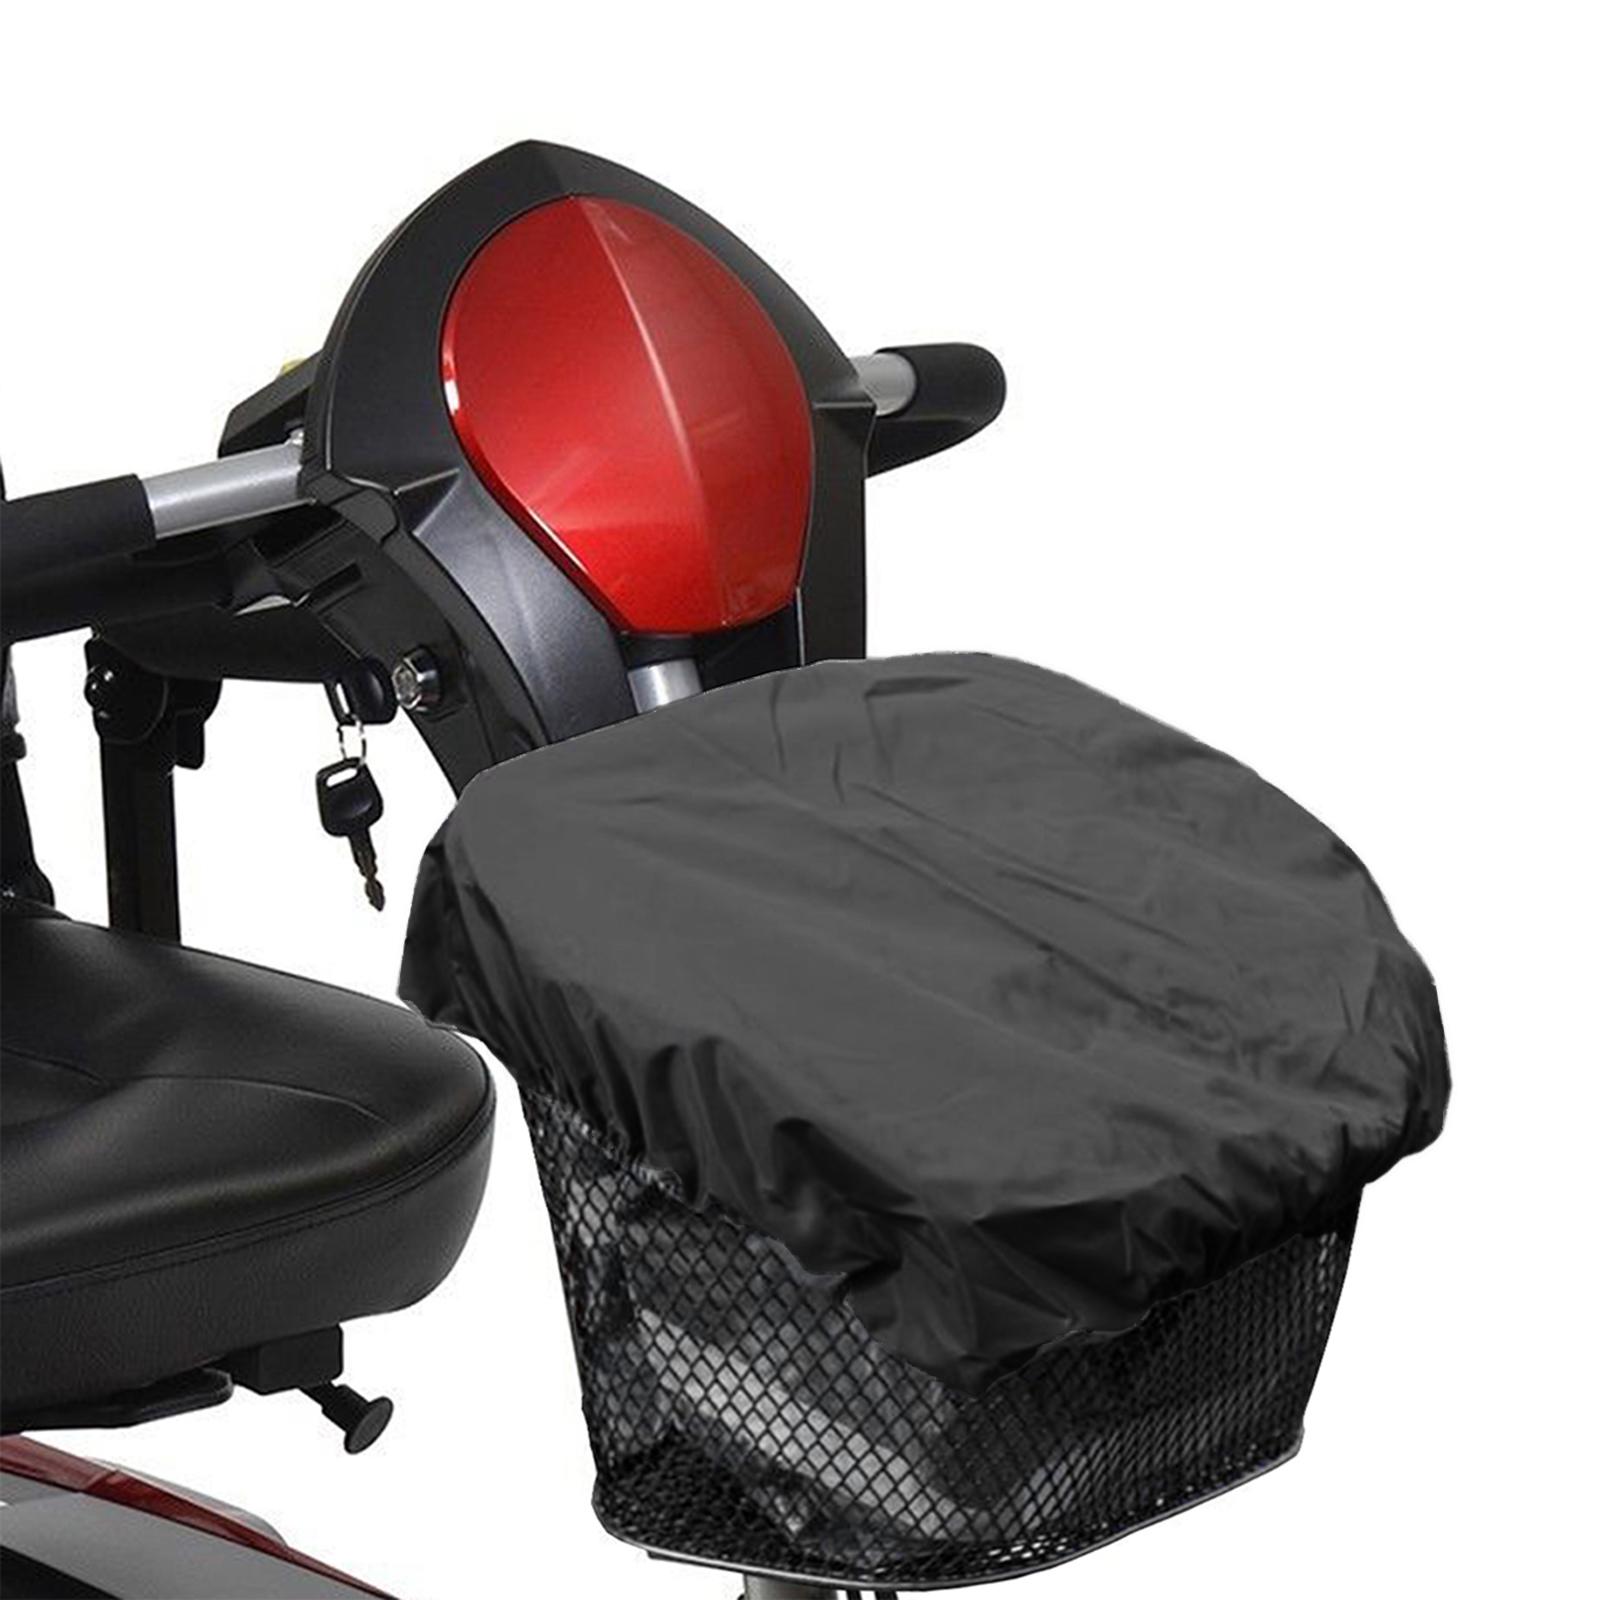 Mobility Scooter Front Basket Liner & Cover Reflective Sunproof Basket Cover Black